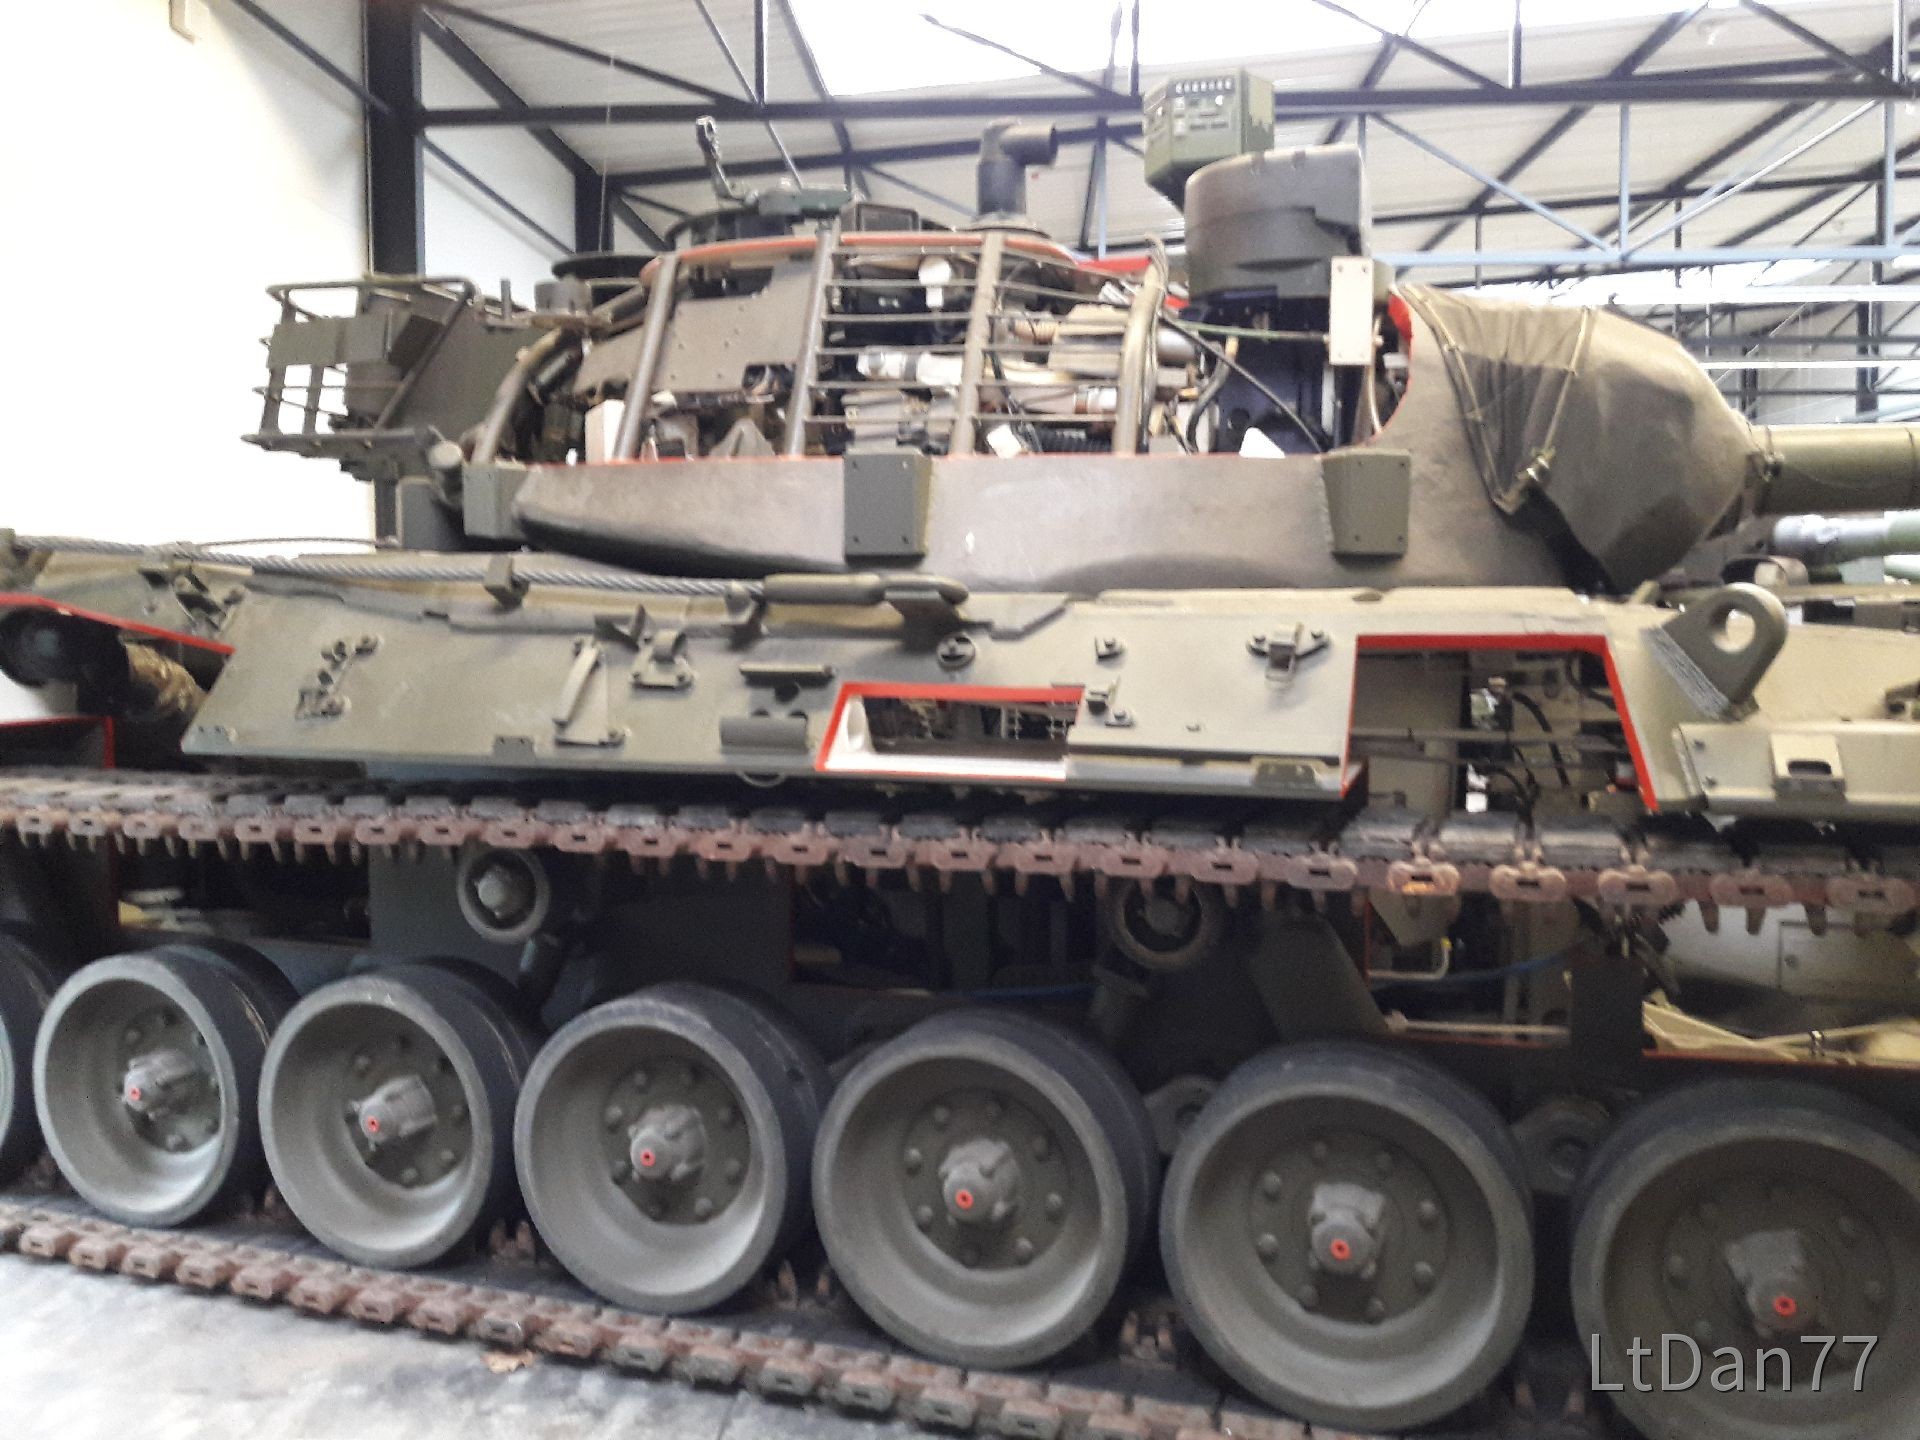 Leopard 1 Schnittmodell